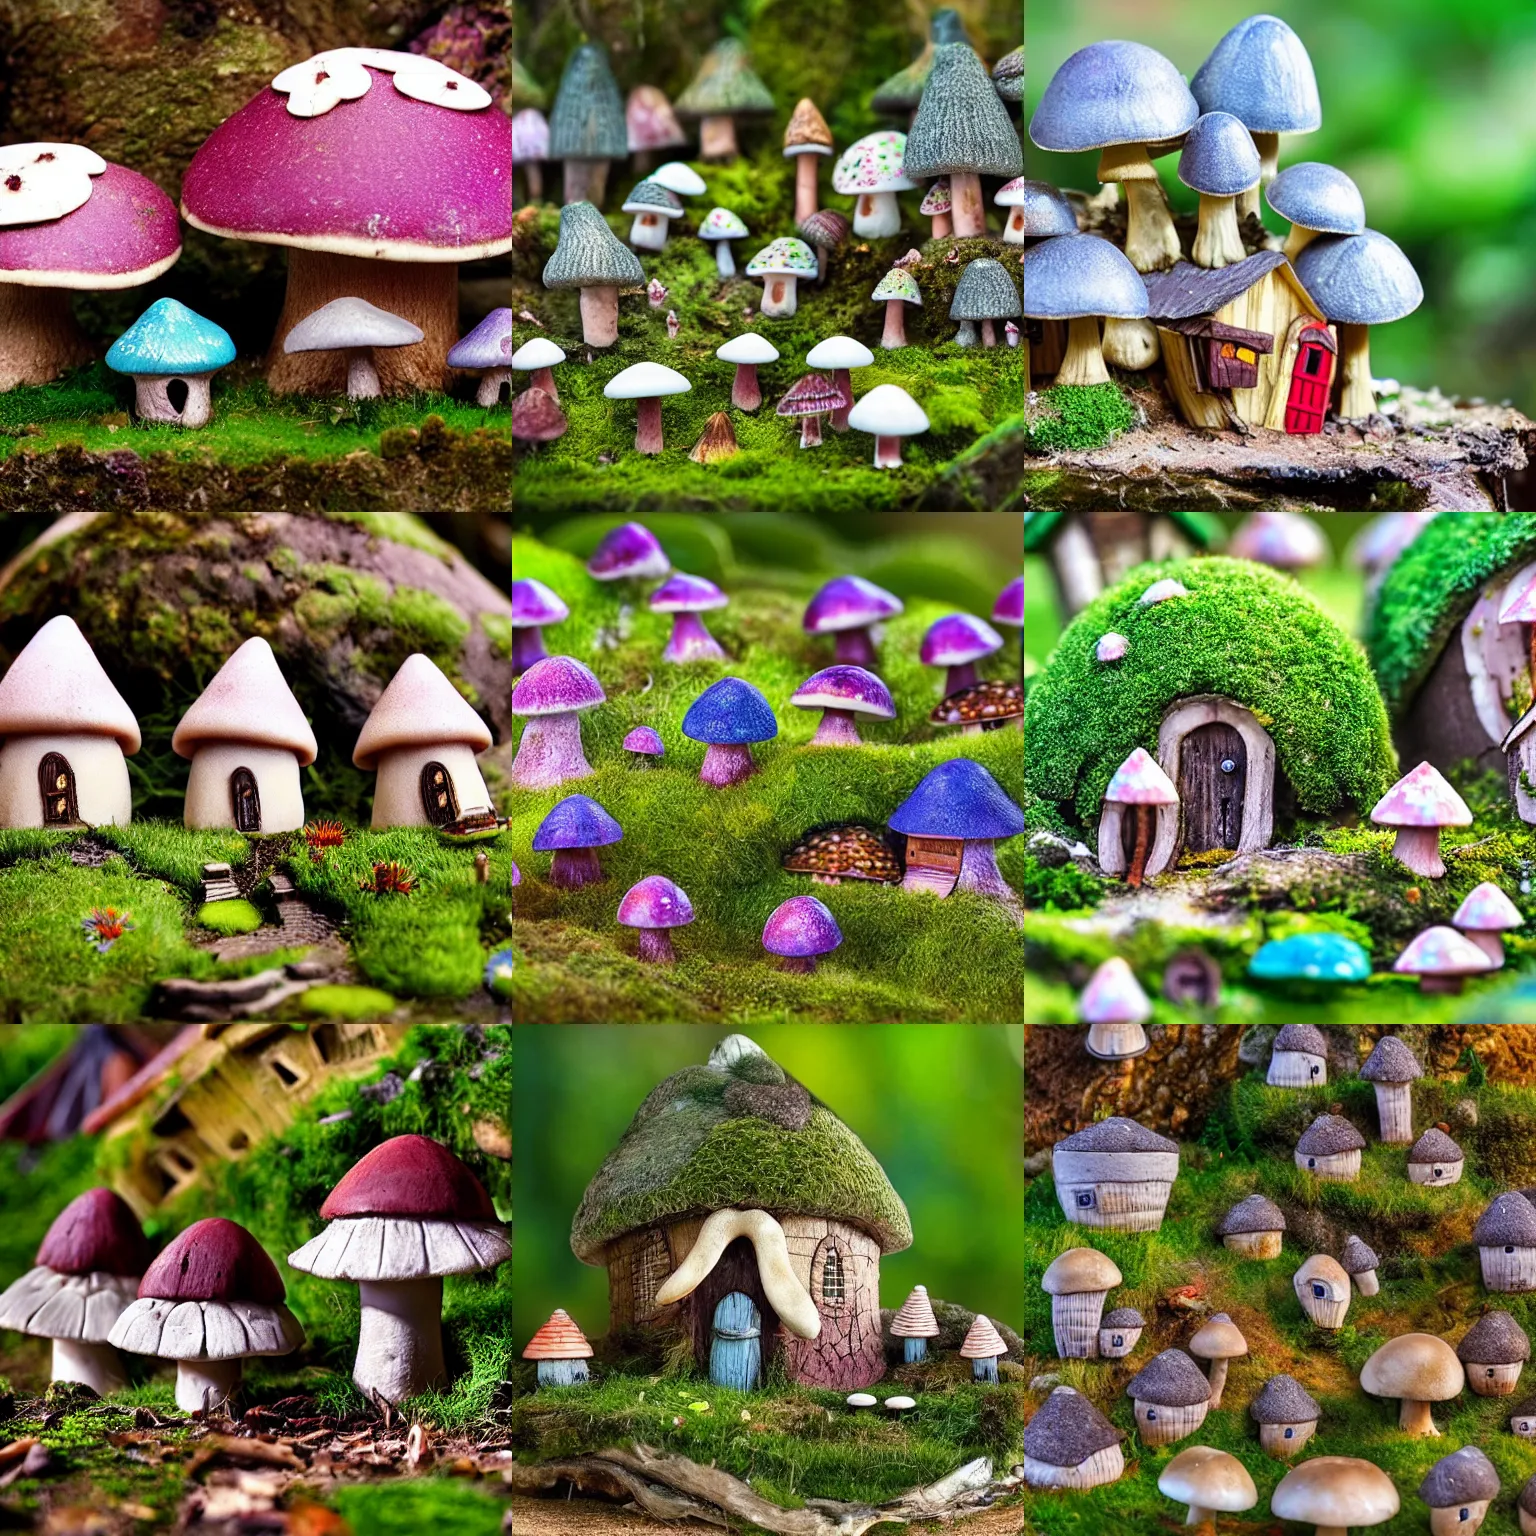 Prompt: fairy village, mushroom houses, macroscopic